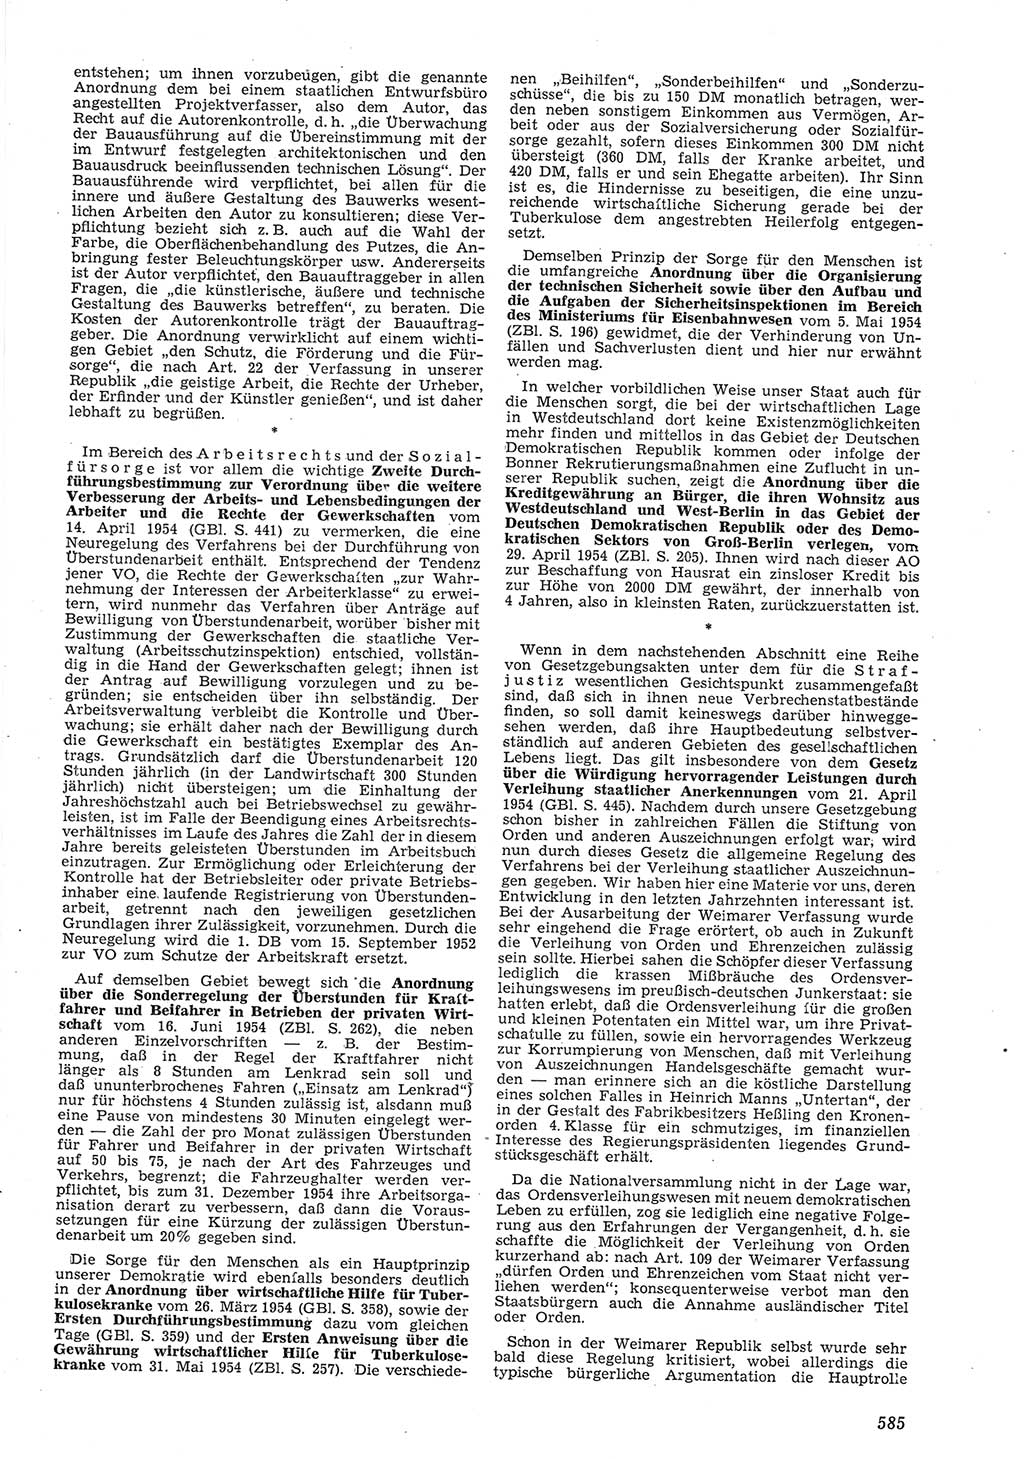 Neue Justiz (NJ), Zeitschrift für Recht und Rechtswissenschaft [Deutsche Demokratische Republik (DDR)], 8. Jahrgang 1954, Seite 585 (NJ DDR 1954, S. 585)